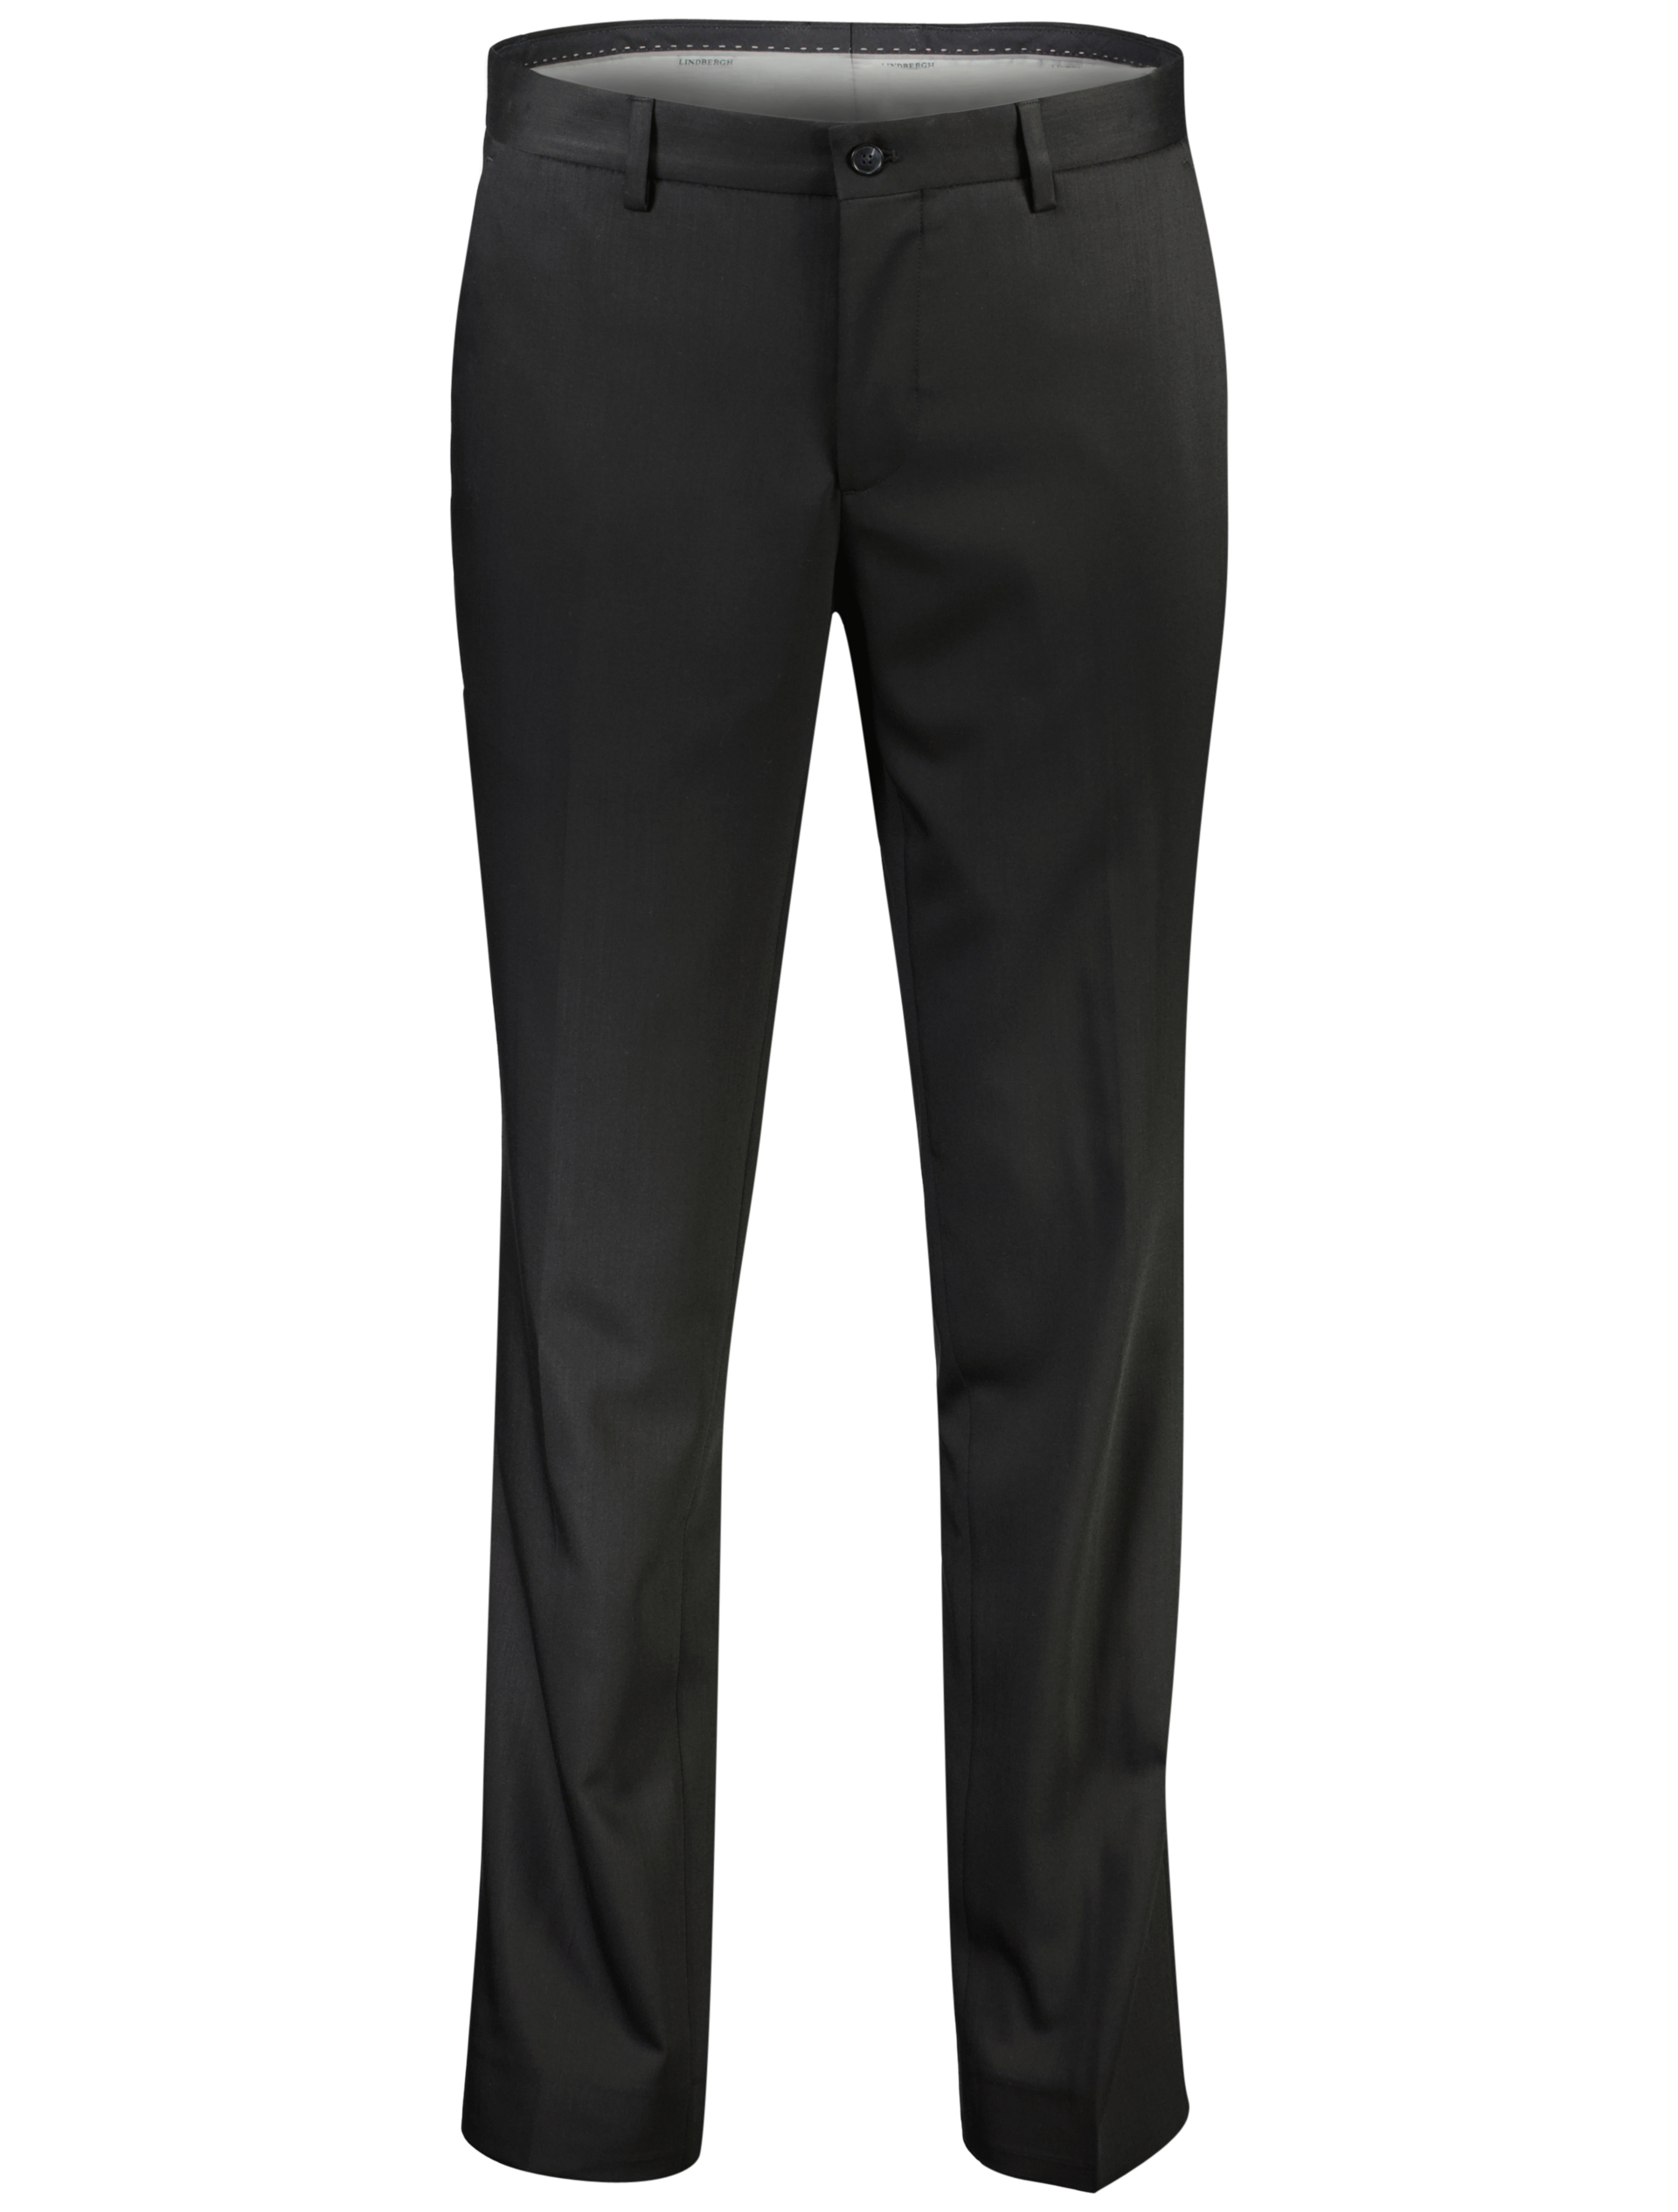 Lindbergh Suit pants black / black